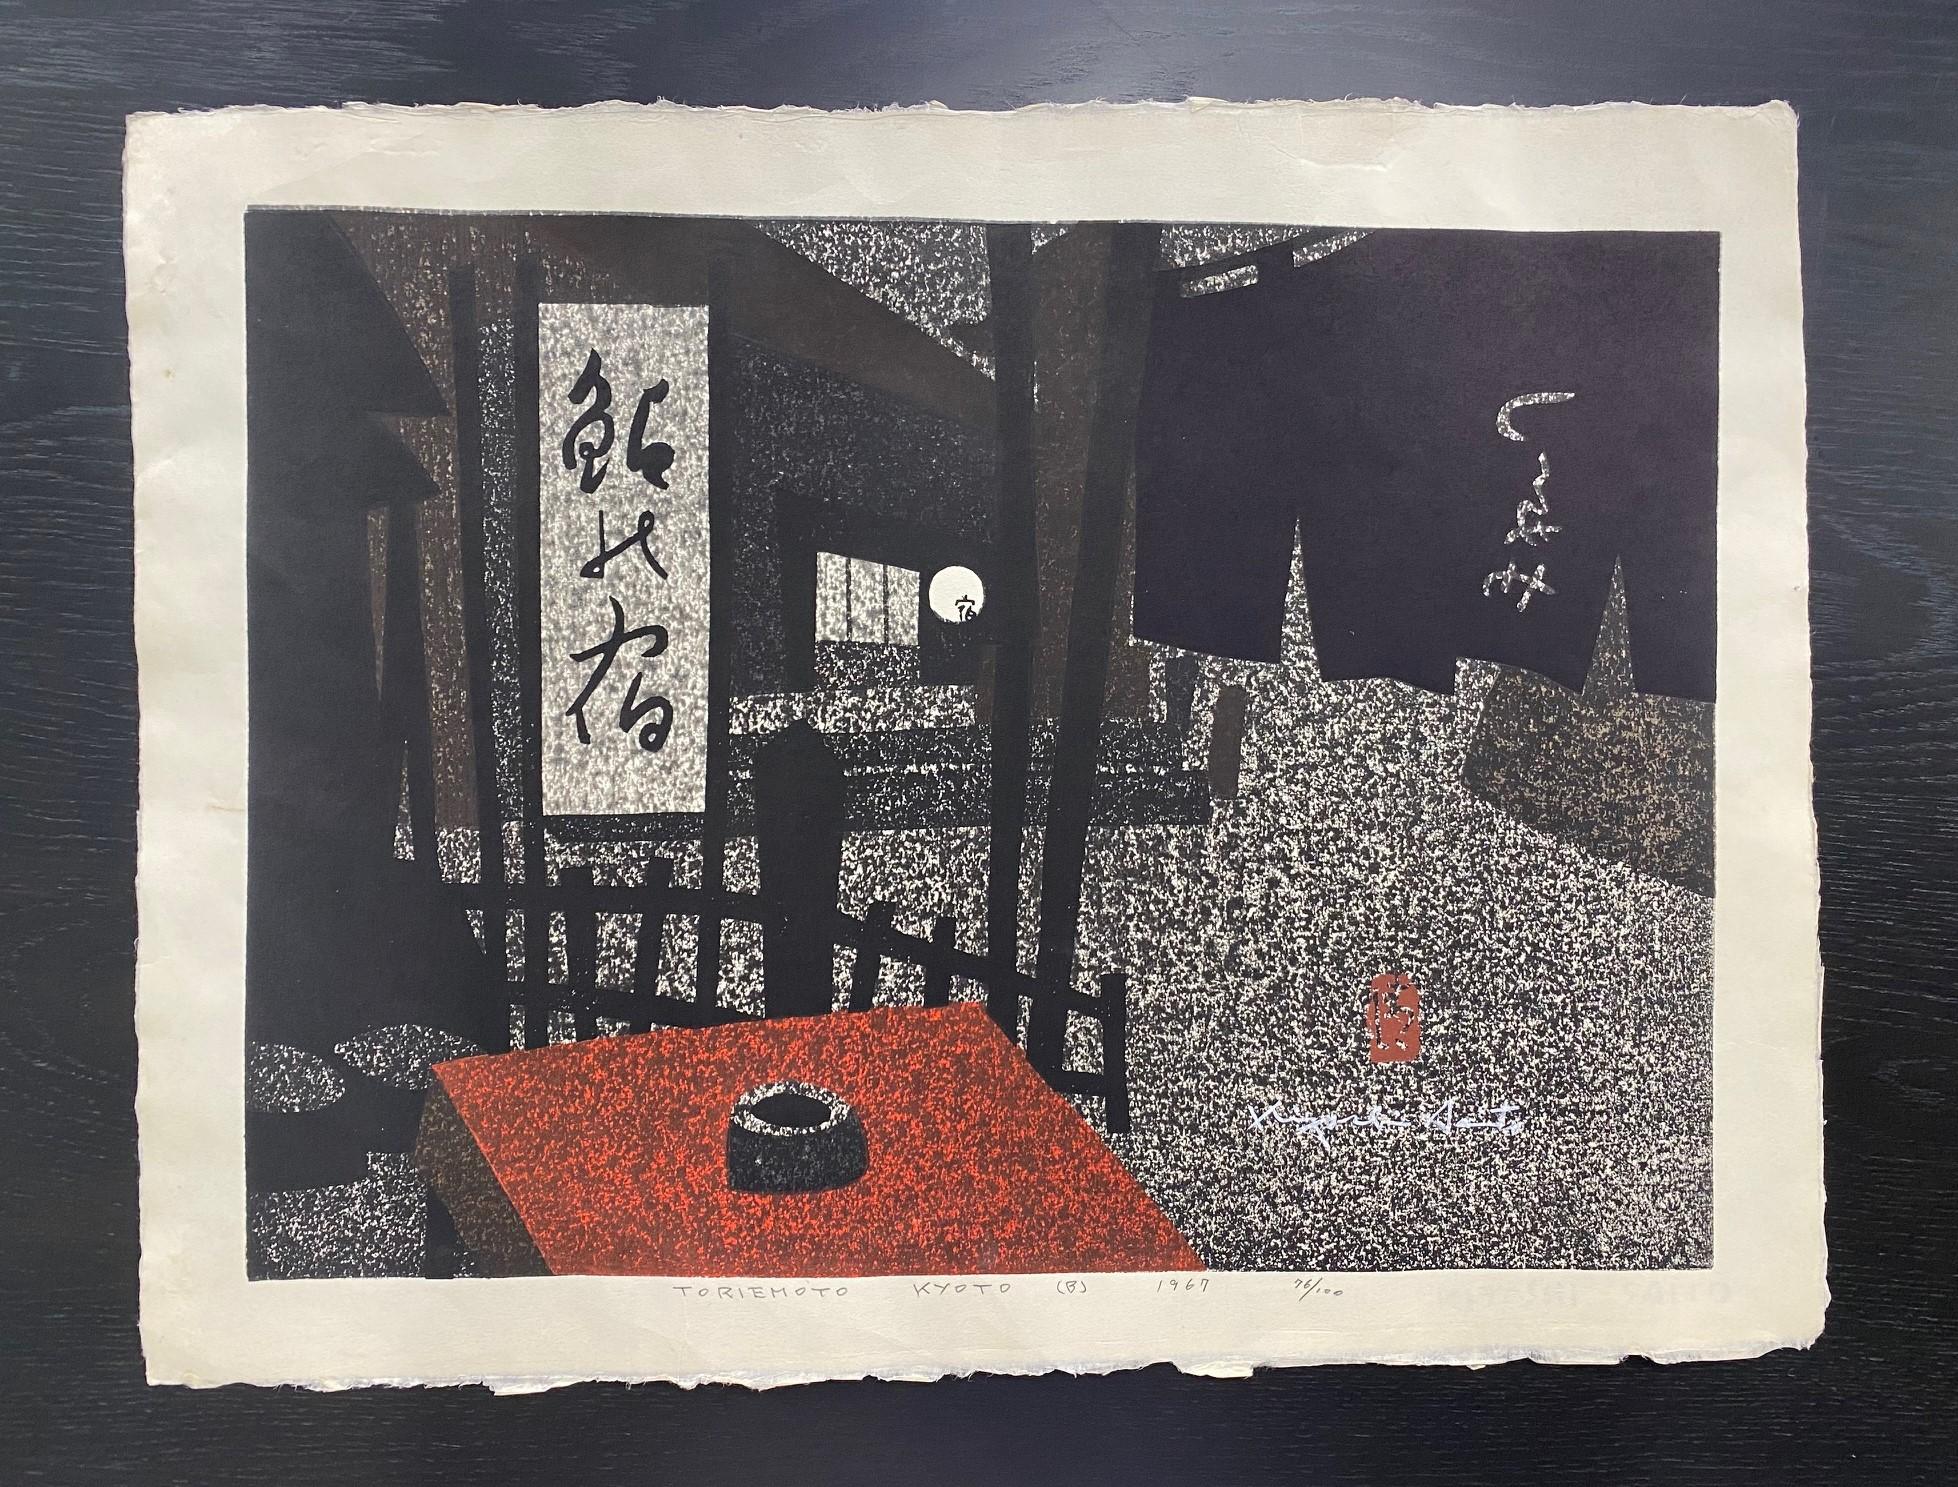 Une gravure sur bois magnifiquement et sombrement composée par le célèbre graveur japonais Kiyoshi Saito. Nombreux sont ceux qui considèrent Saito comme l'un des plus importants, sinon le plus important, des graveurs japonais contemporains du XXe